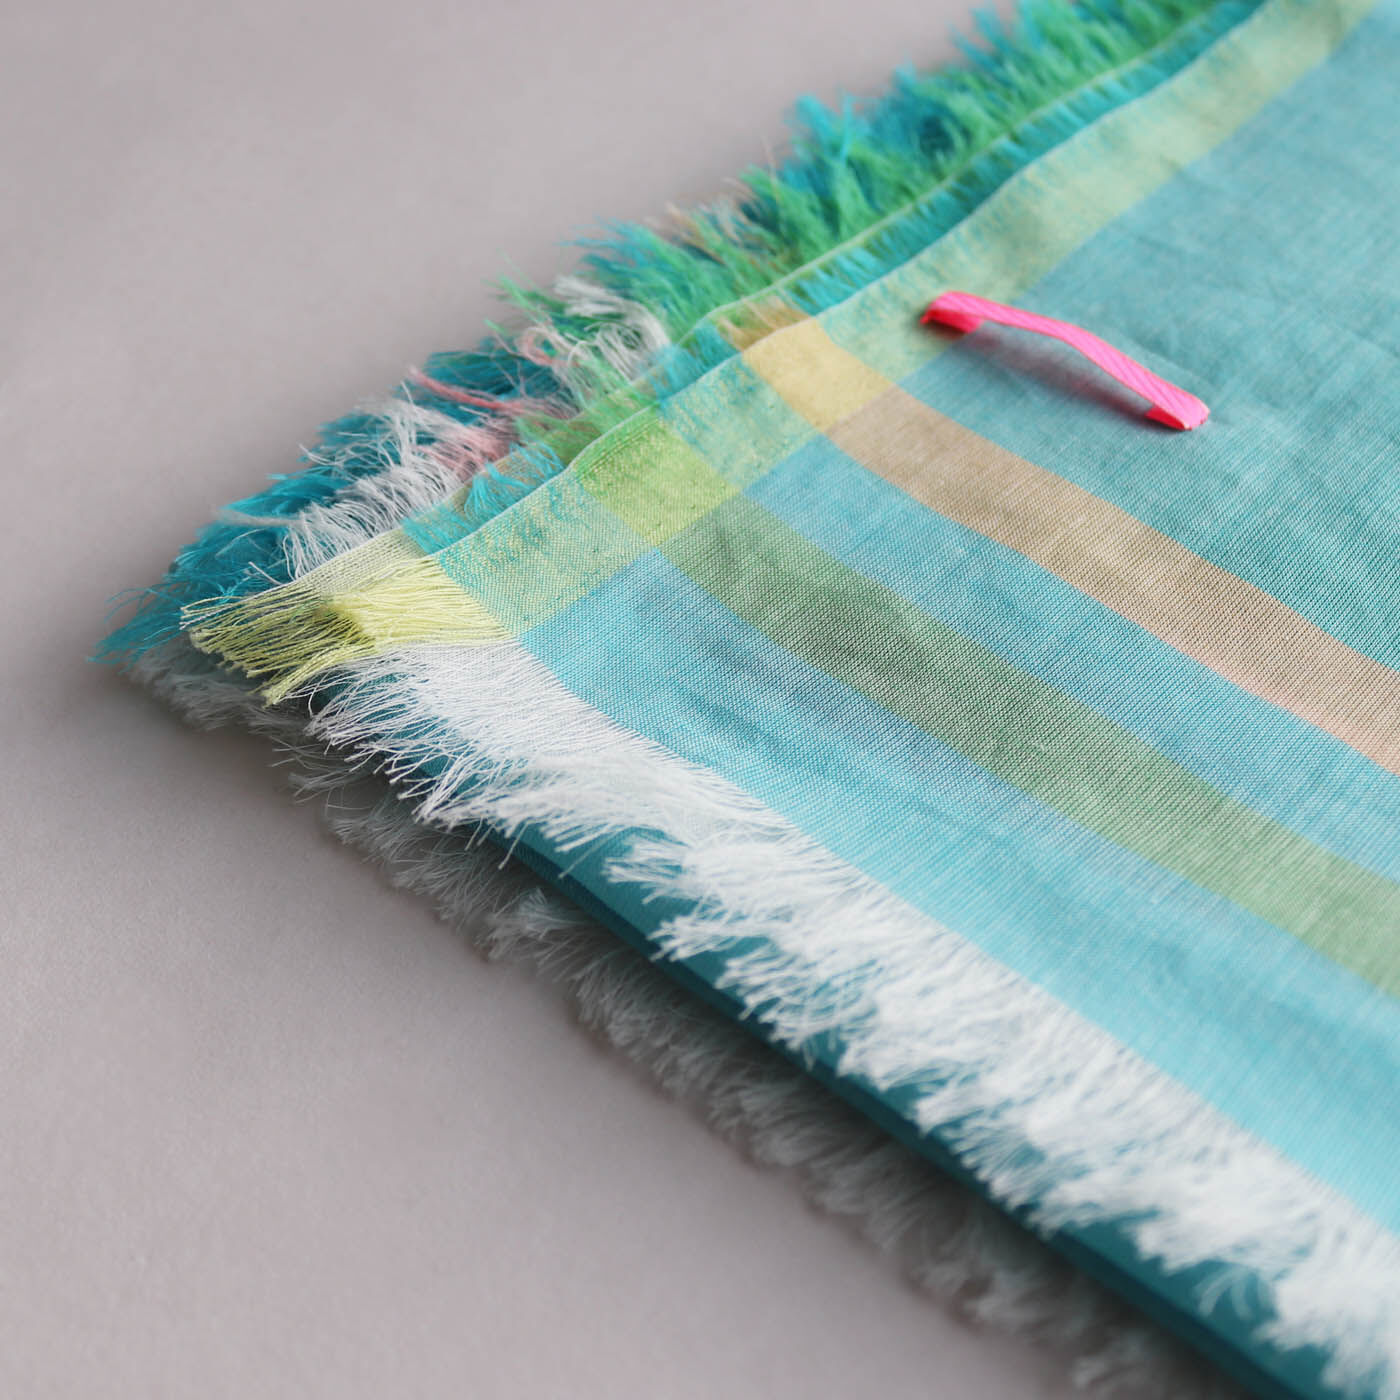 ＆Stories|テキスタイルデザイナーと作った 播州織のそよ風みたいなストール〈カプリマリンブルー〉|コンピュータージャカードの高い技術で織り上げる繊細さが魅力です。